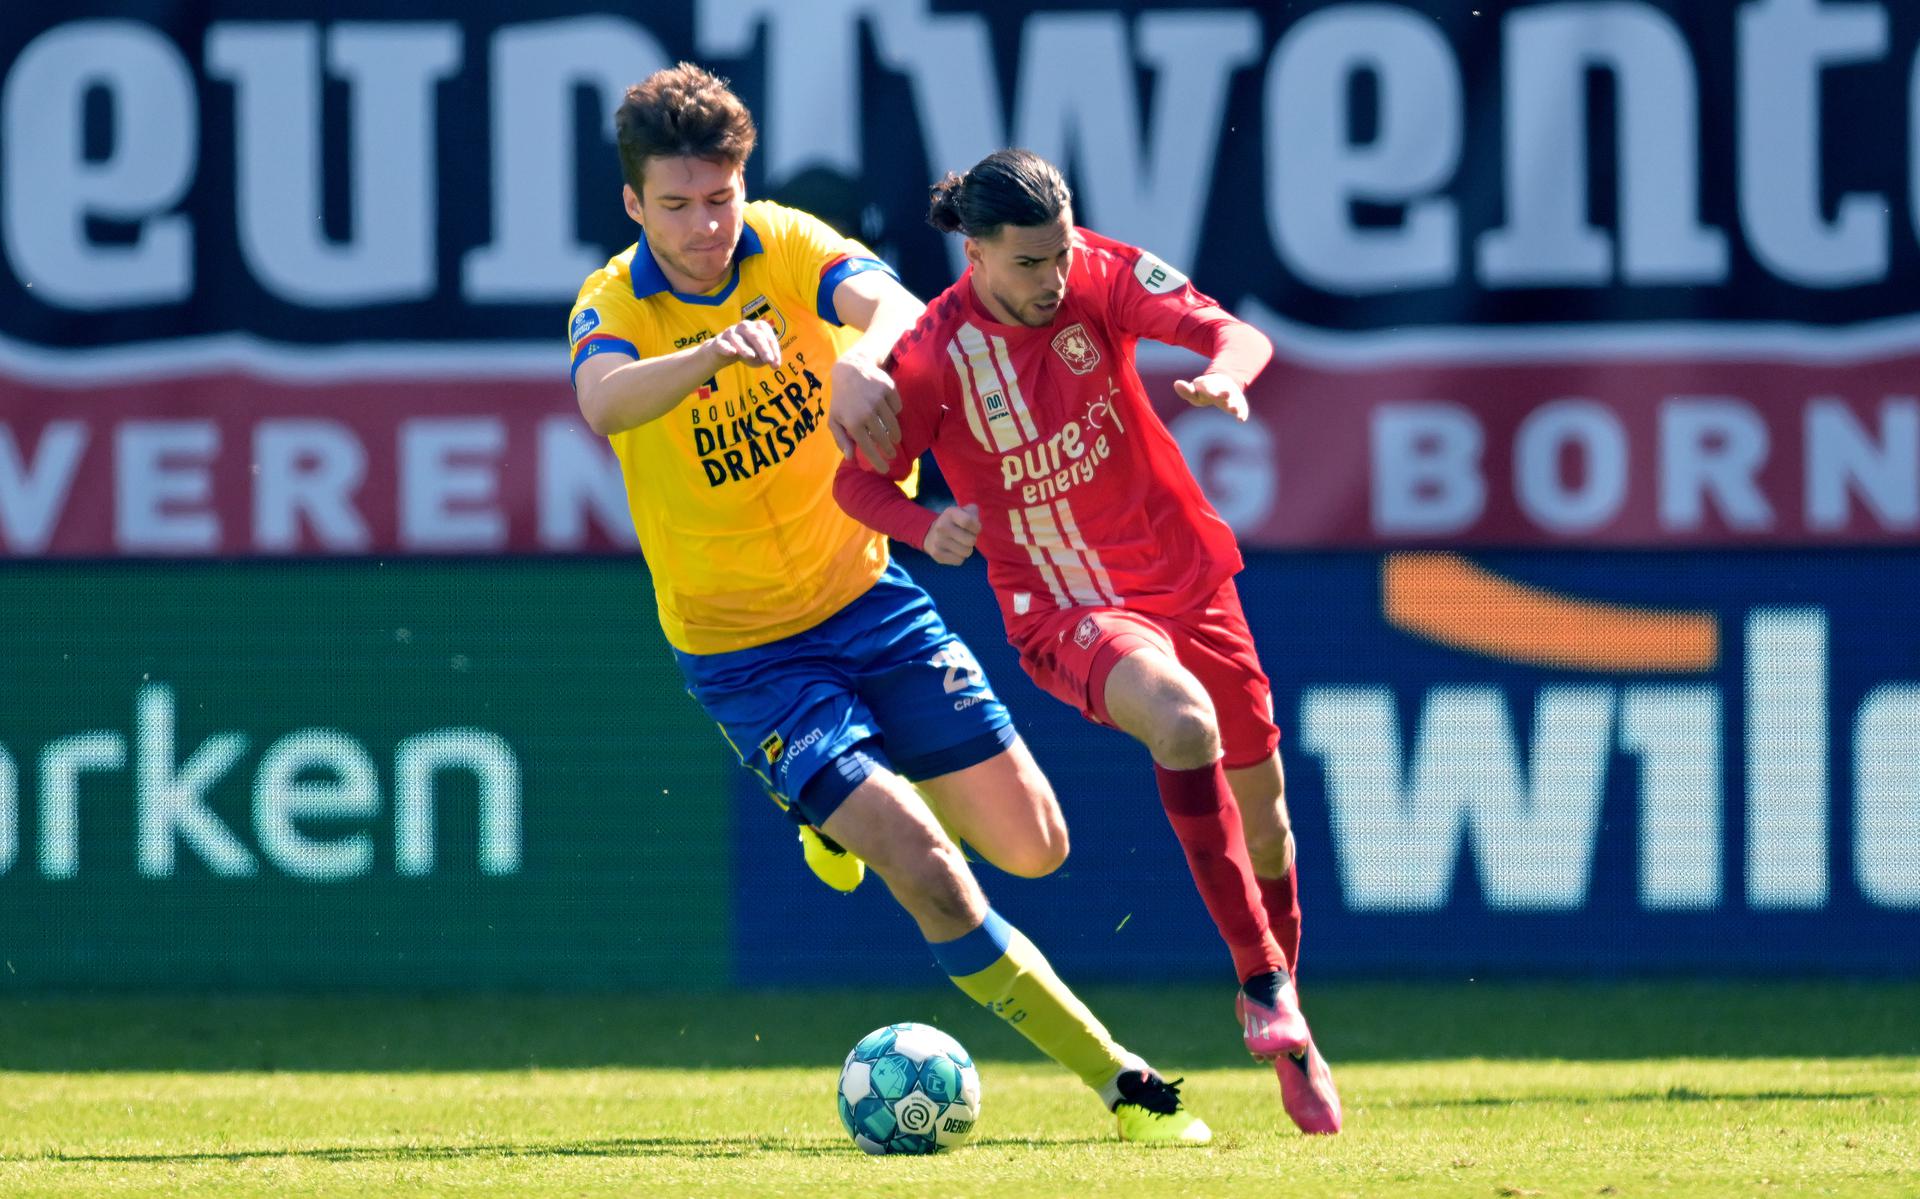 Roberts Uldrikis mocht drie kwartier invallen in de wedstrijd tussen FC Twente en SC Cambuur.